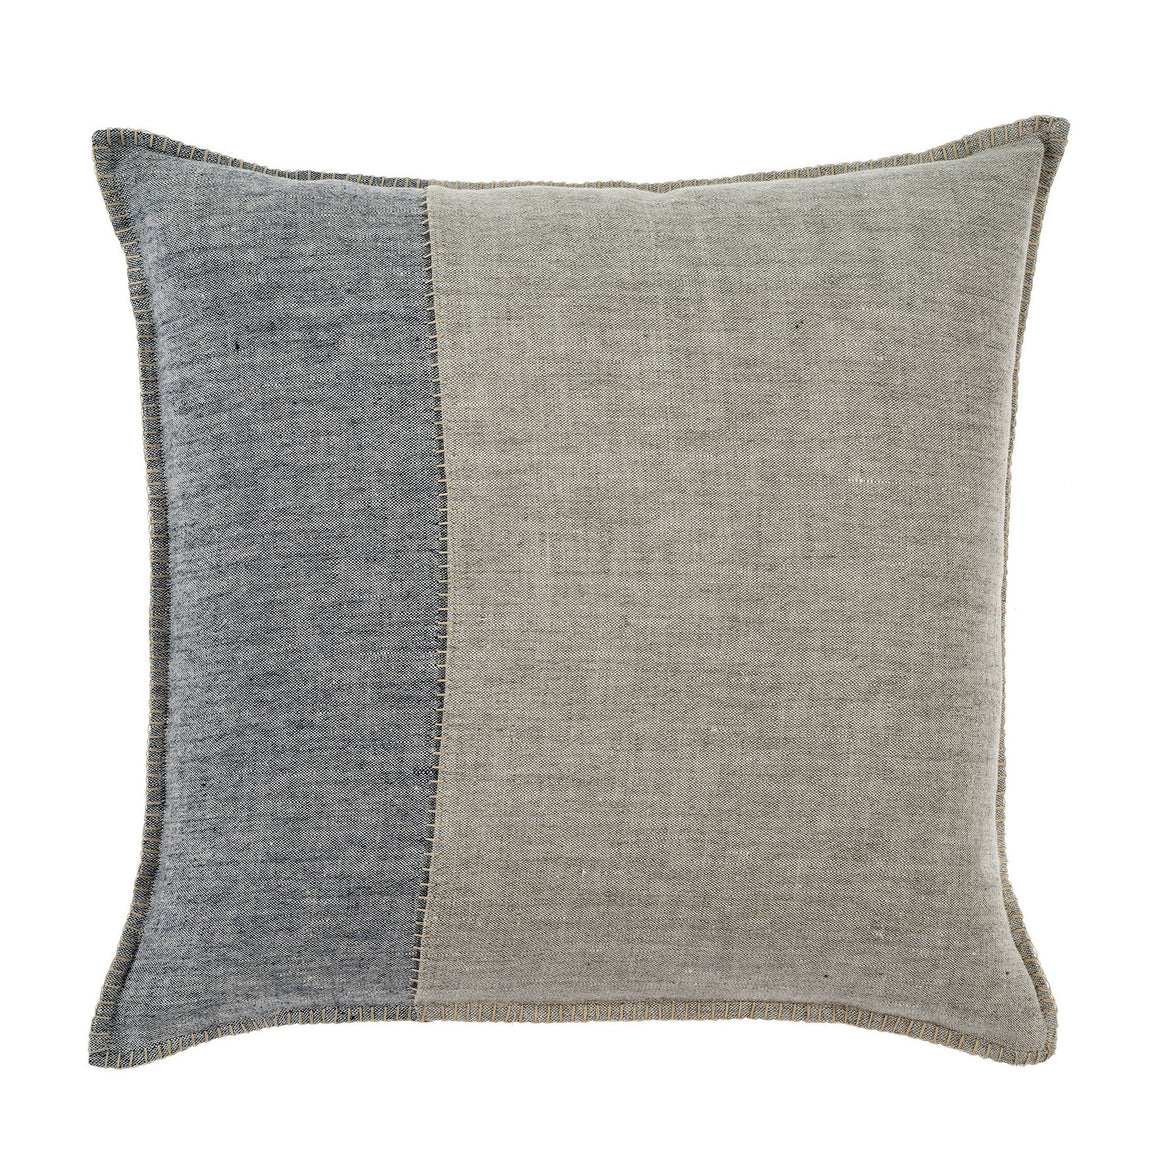 Sidestitch Linen Pillow